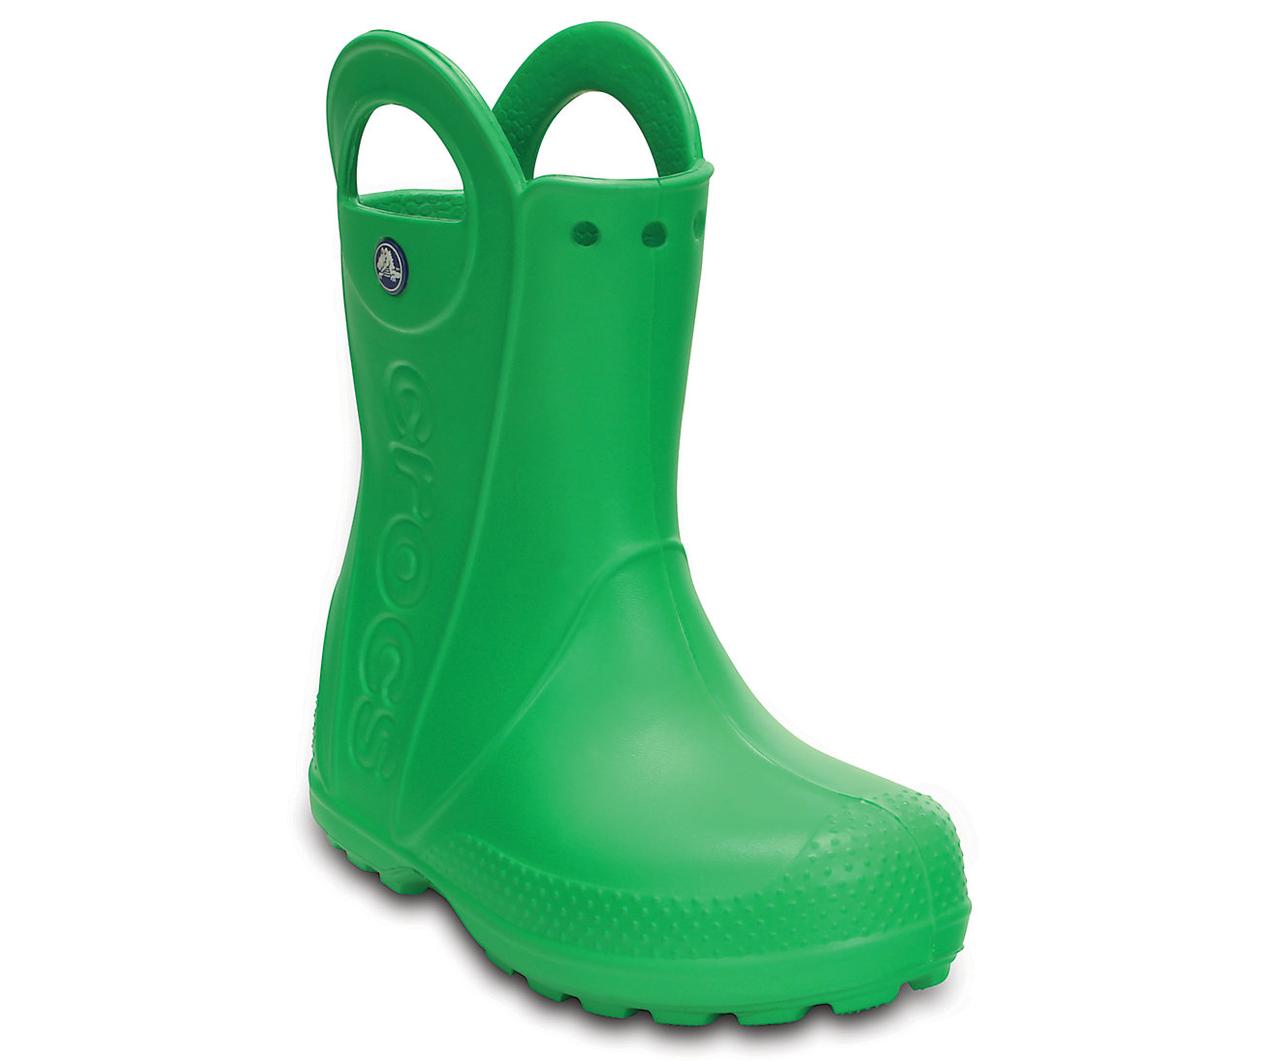 Сапоги резиновые для мальчика дождевики Кроксы с ручками / Crocs Kids Handle It Rain Boot (12803), Зеленые